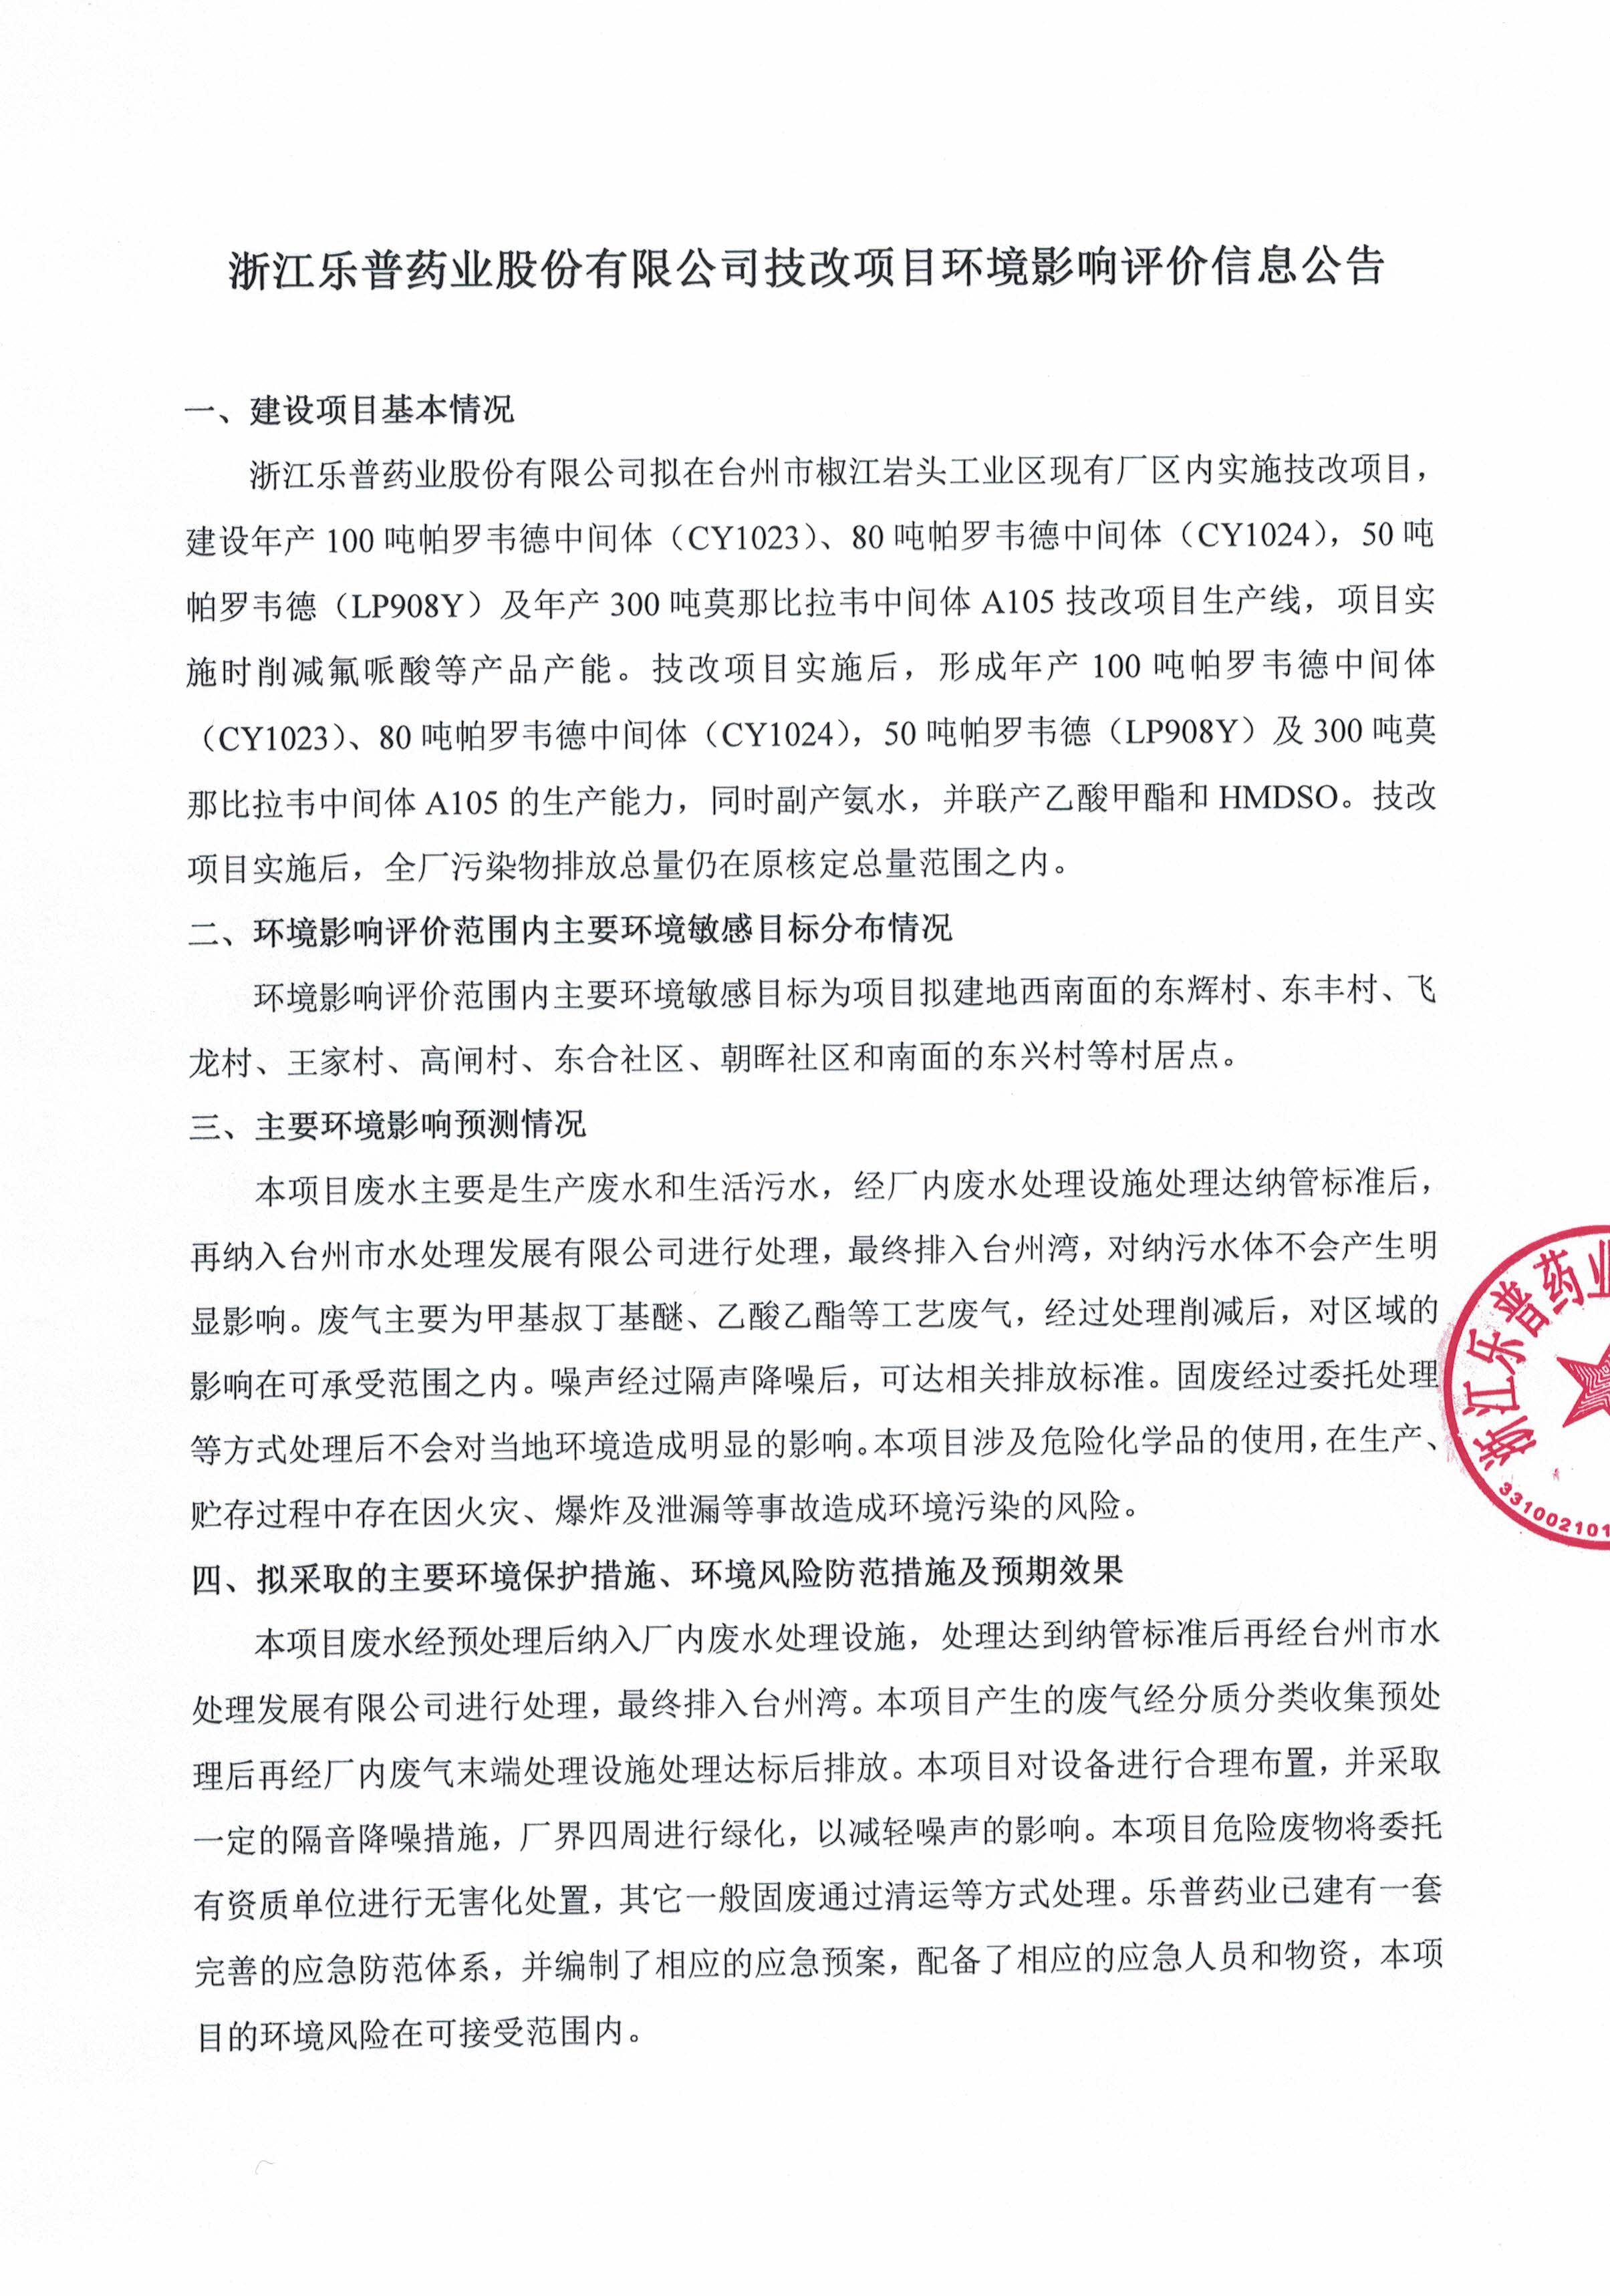 浙江樂普藥業股份有限公司技改項目環境影響評價信息公告